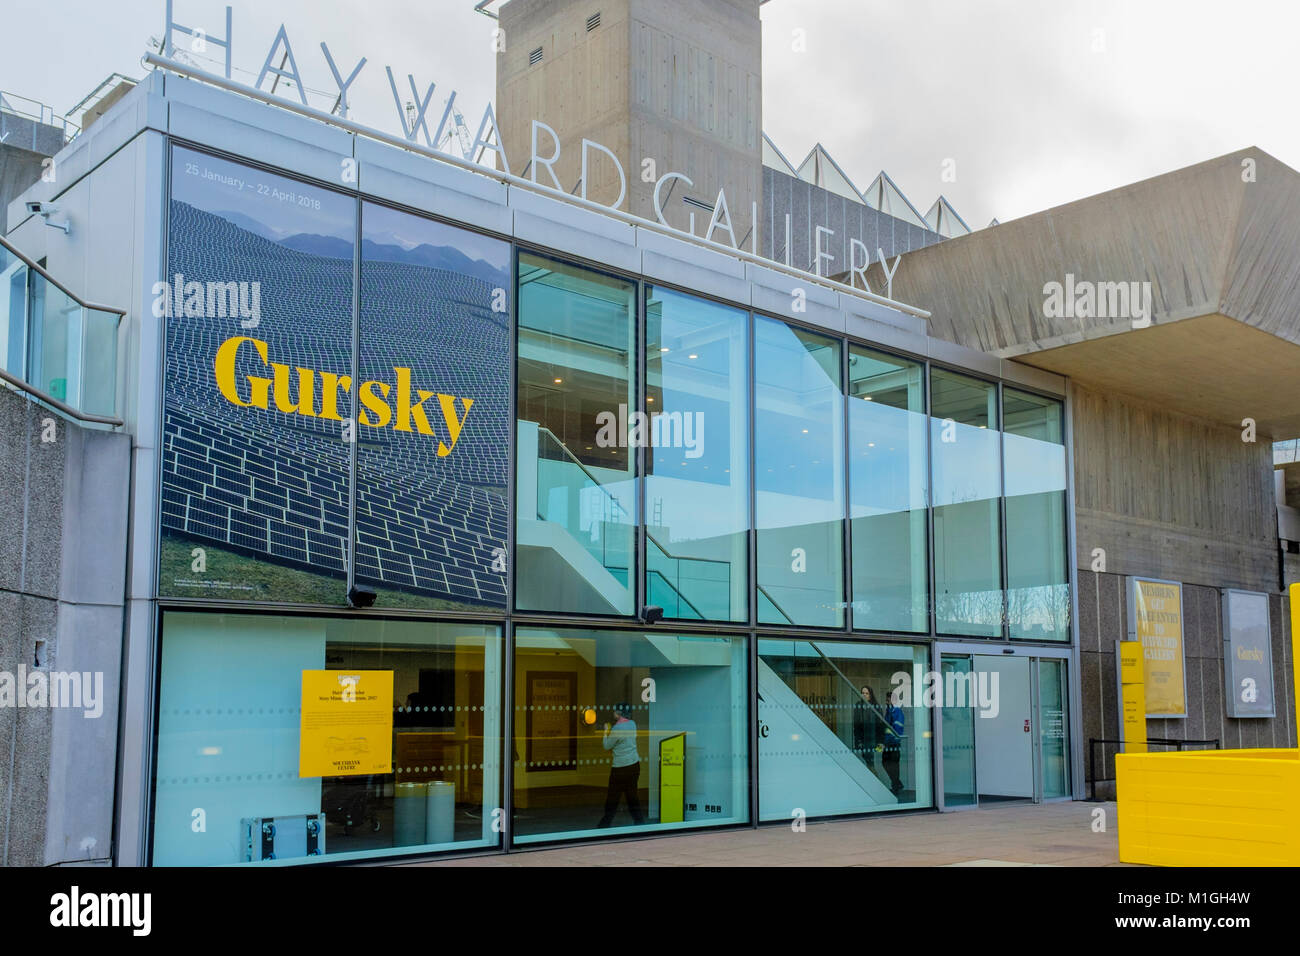 La Hayward Gallery de Londres, l'un des leaders mondiaux de galeries d'art contemporain, a rouvert ses portes en janvier 2018 après deux ans de rénovation. Banque D'Images